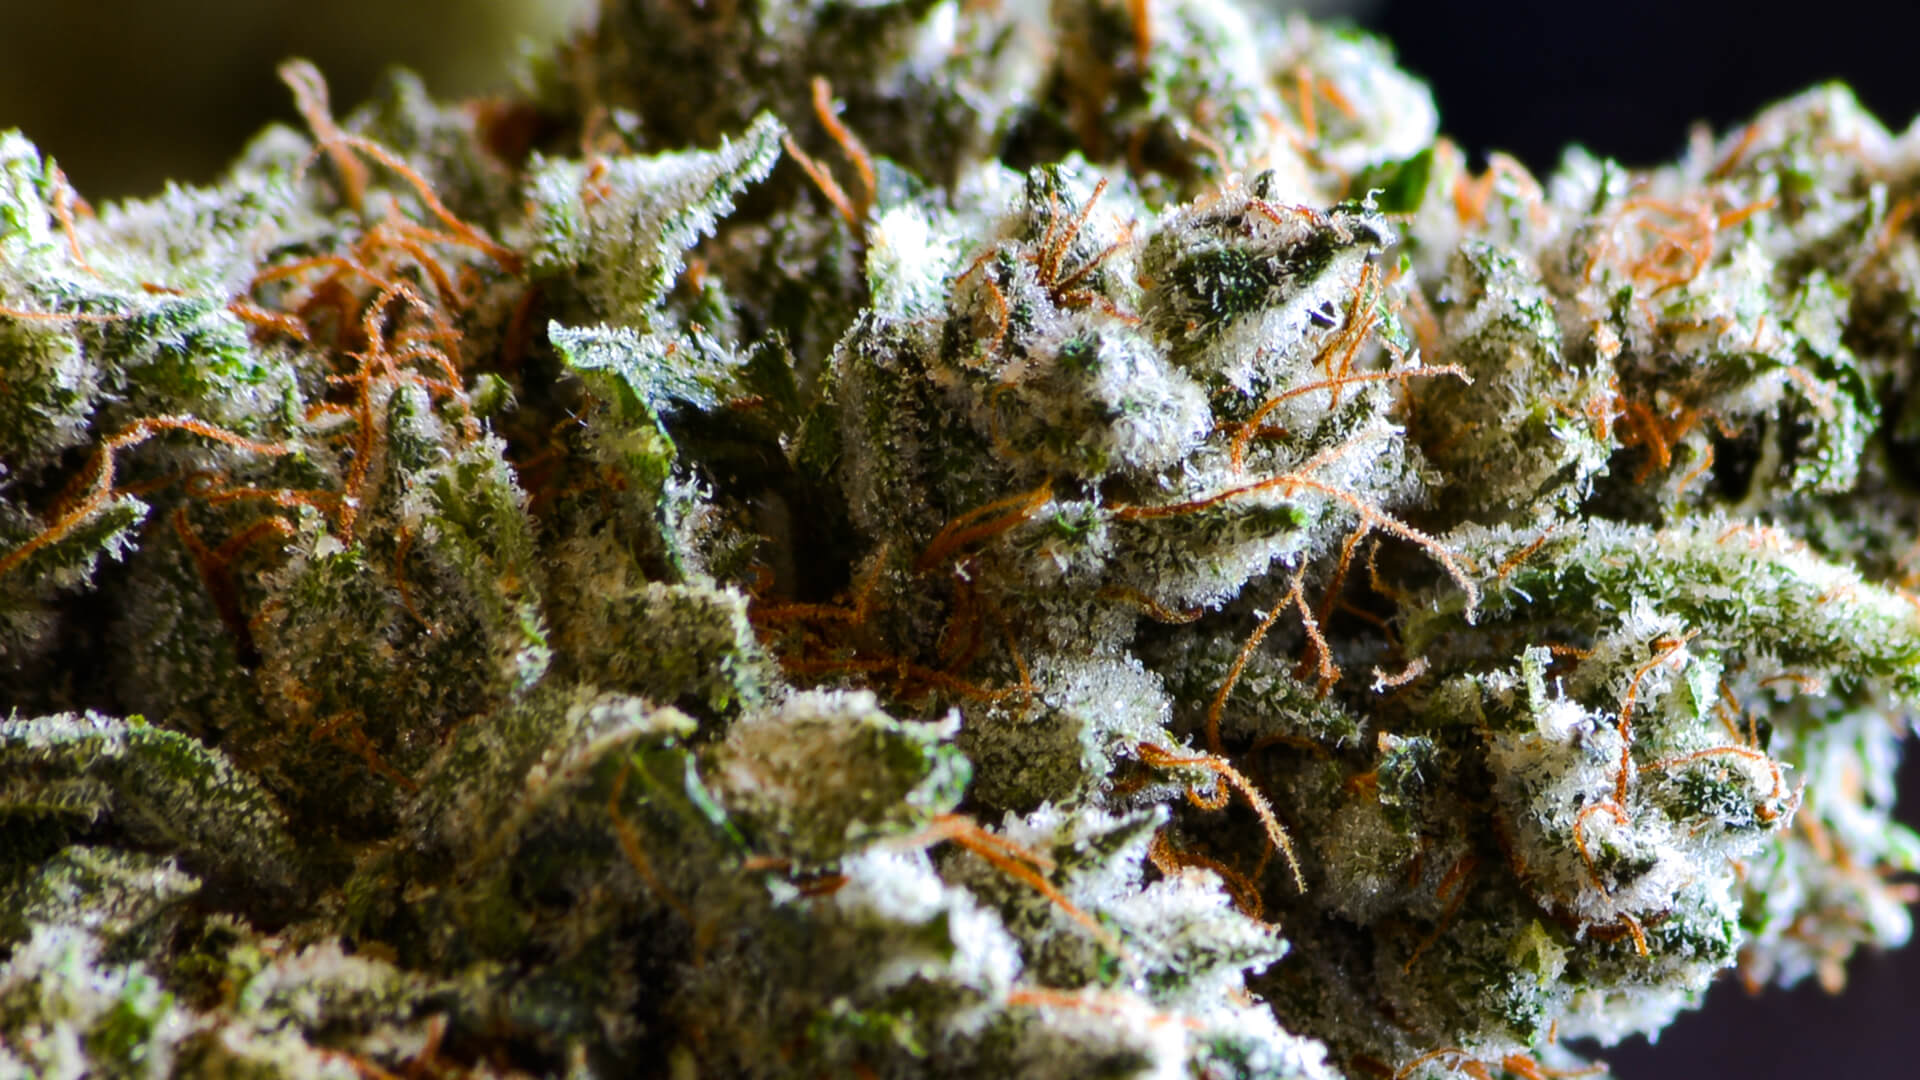 A closeup of a cannabis nug